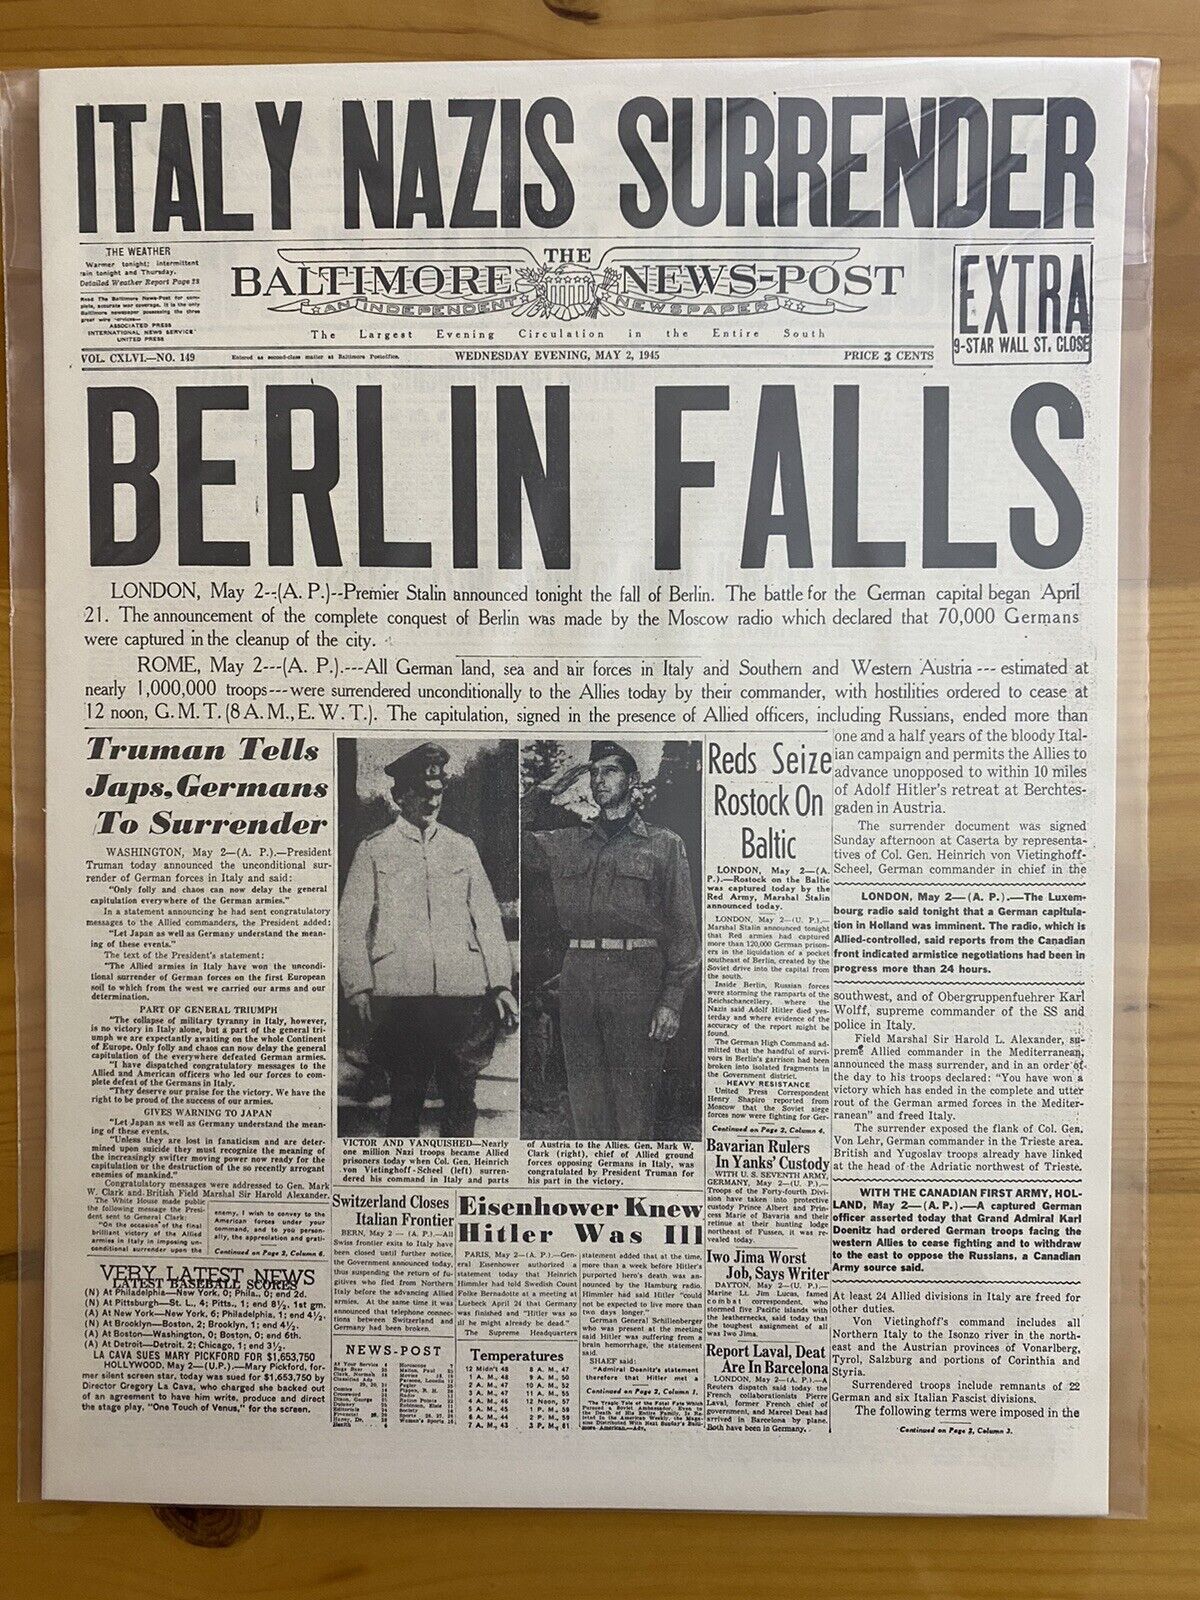 VINTAGE NEWSPAPER HEADLINE ~BERLIN FALLS  SURRENDER GERMANY ITALY 1945 WW2